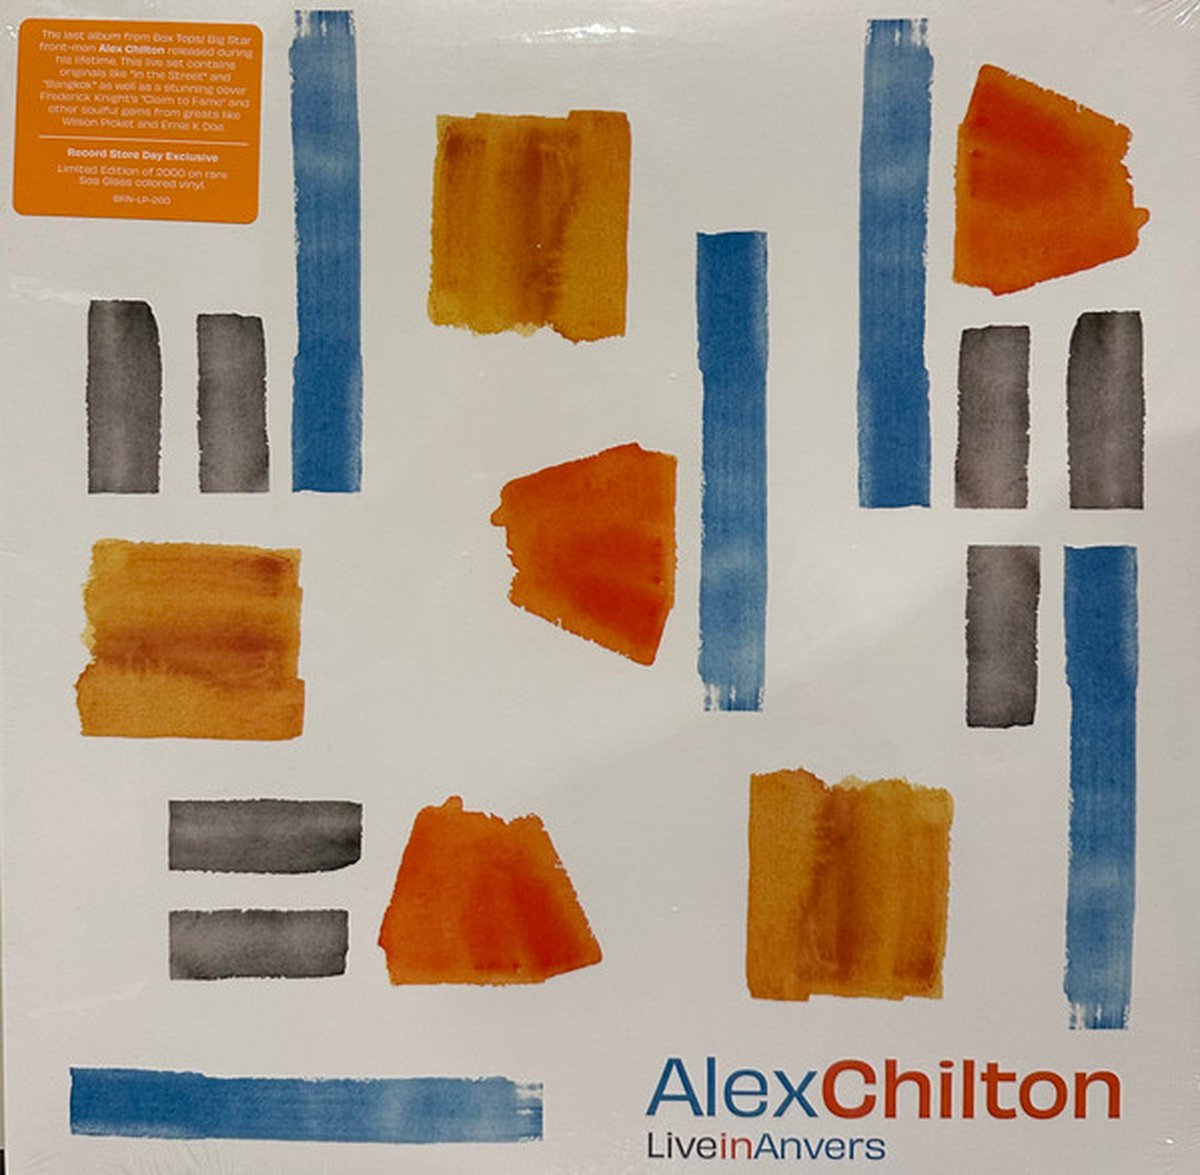 CHILTON ALEX - LIVE IN ANVER (Sea Glass Vinyl)